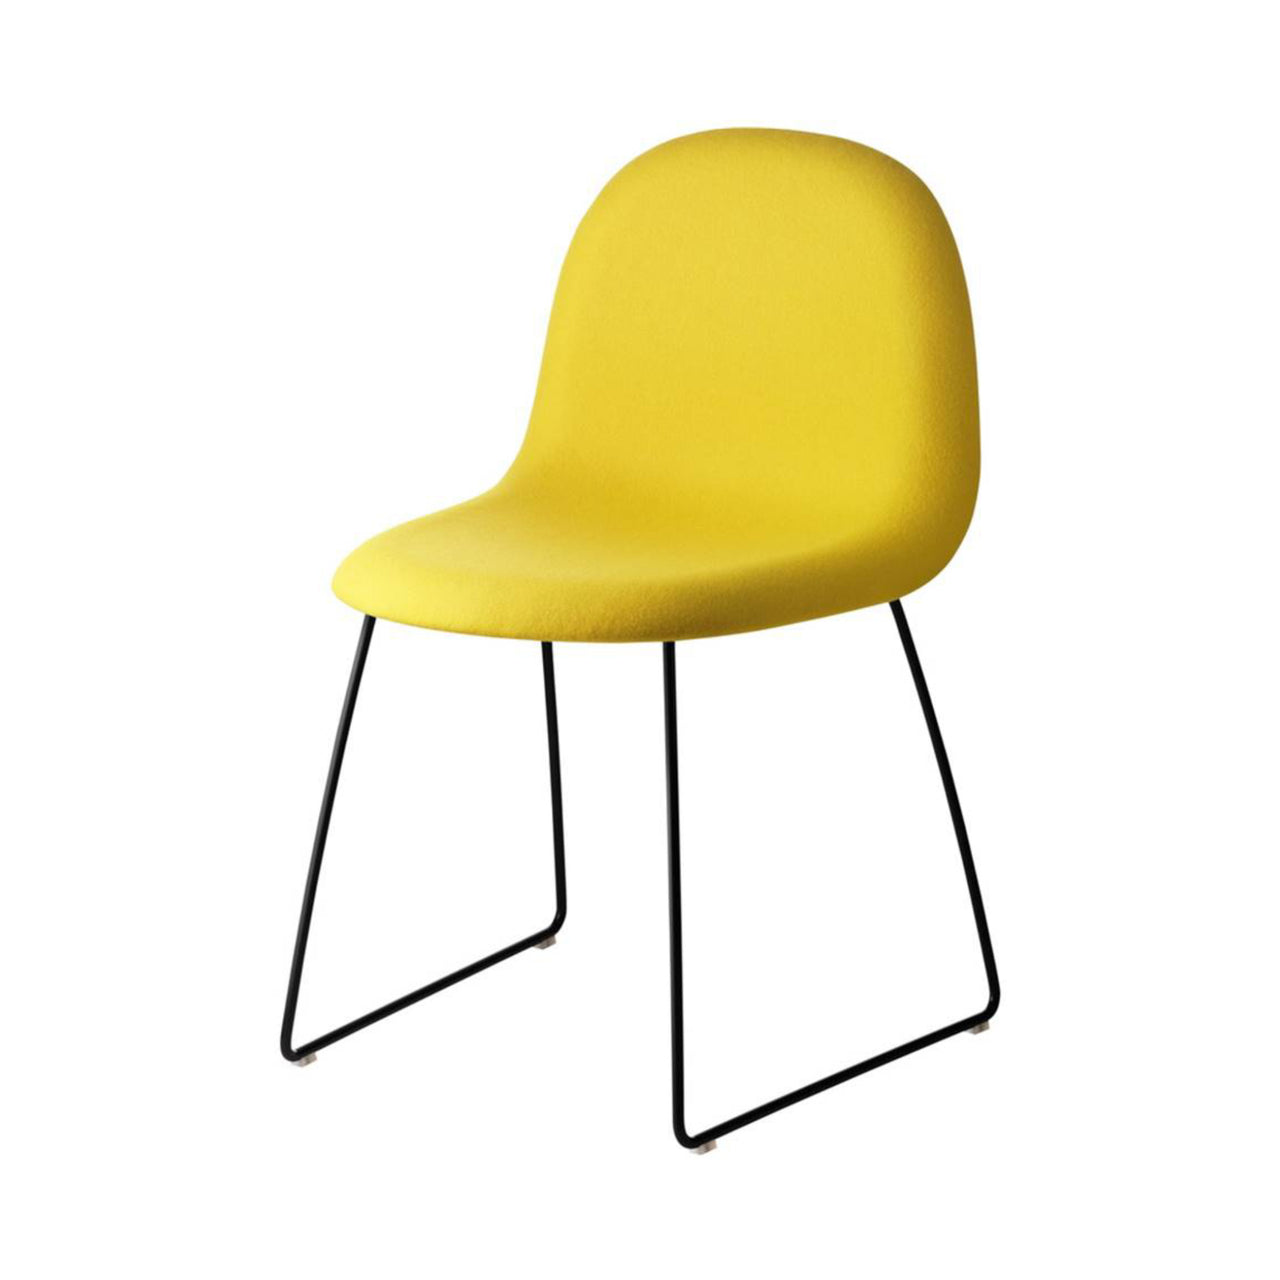 3D Dining Chair Sledge Base: Plastic Shell + Front Upholstered + Black Semi Matt